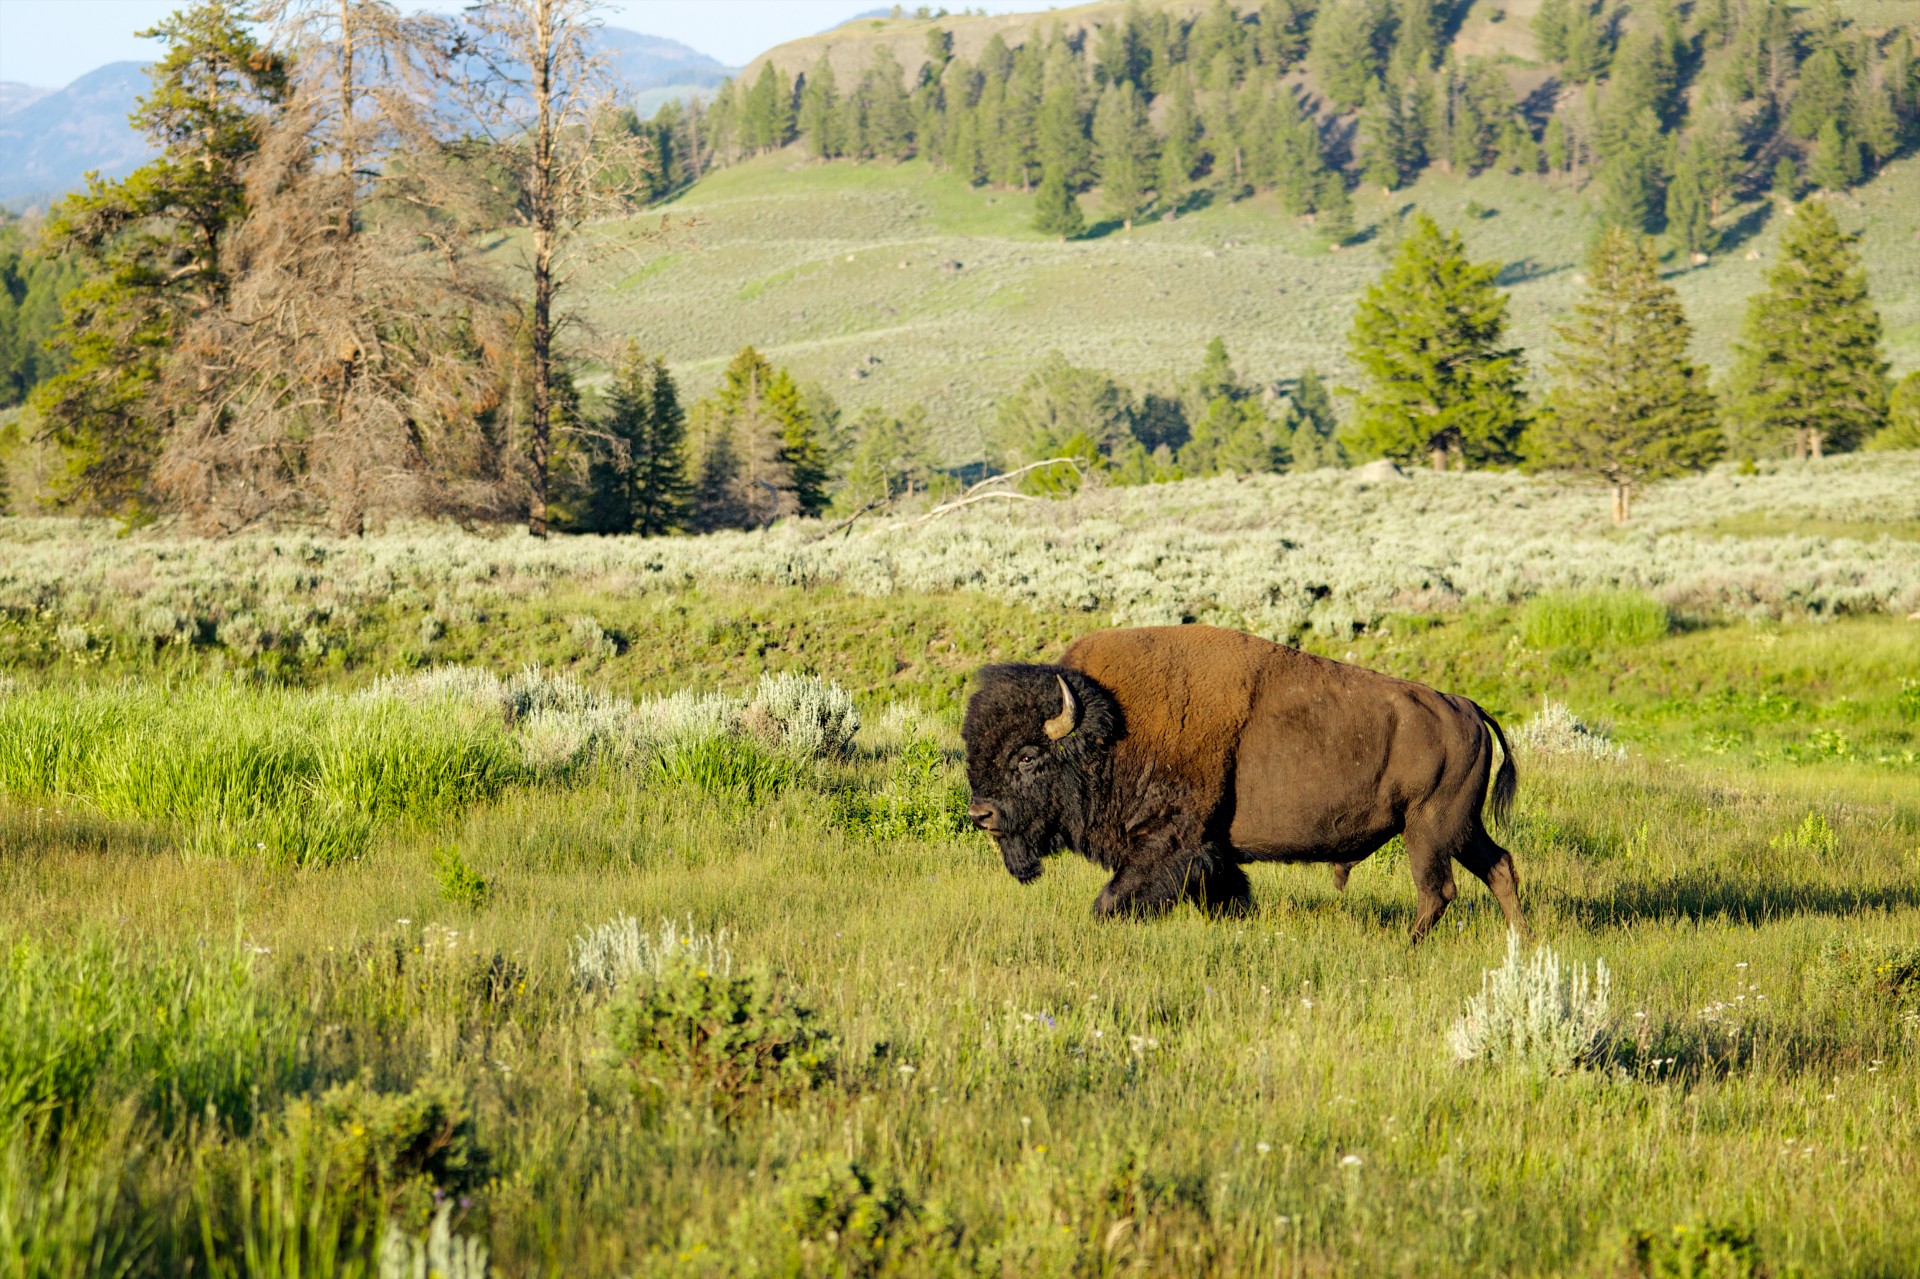 200+张最精彩的“Buffalo”图片 · 100%免费下载 · Pexels素材图片